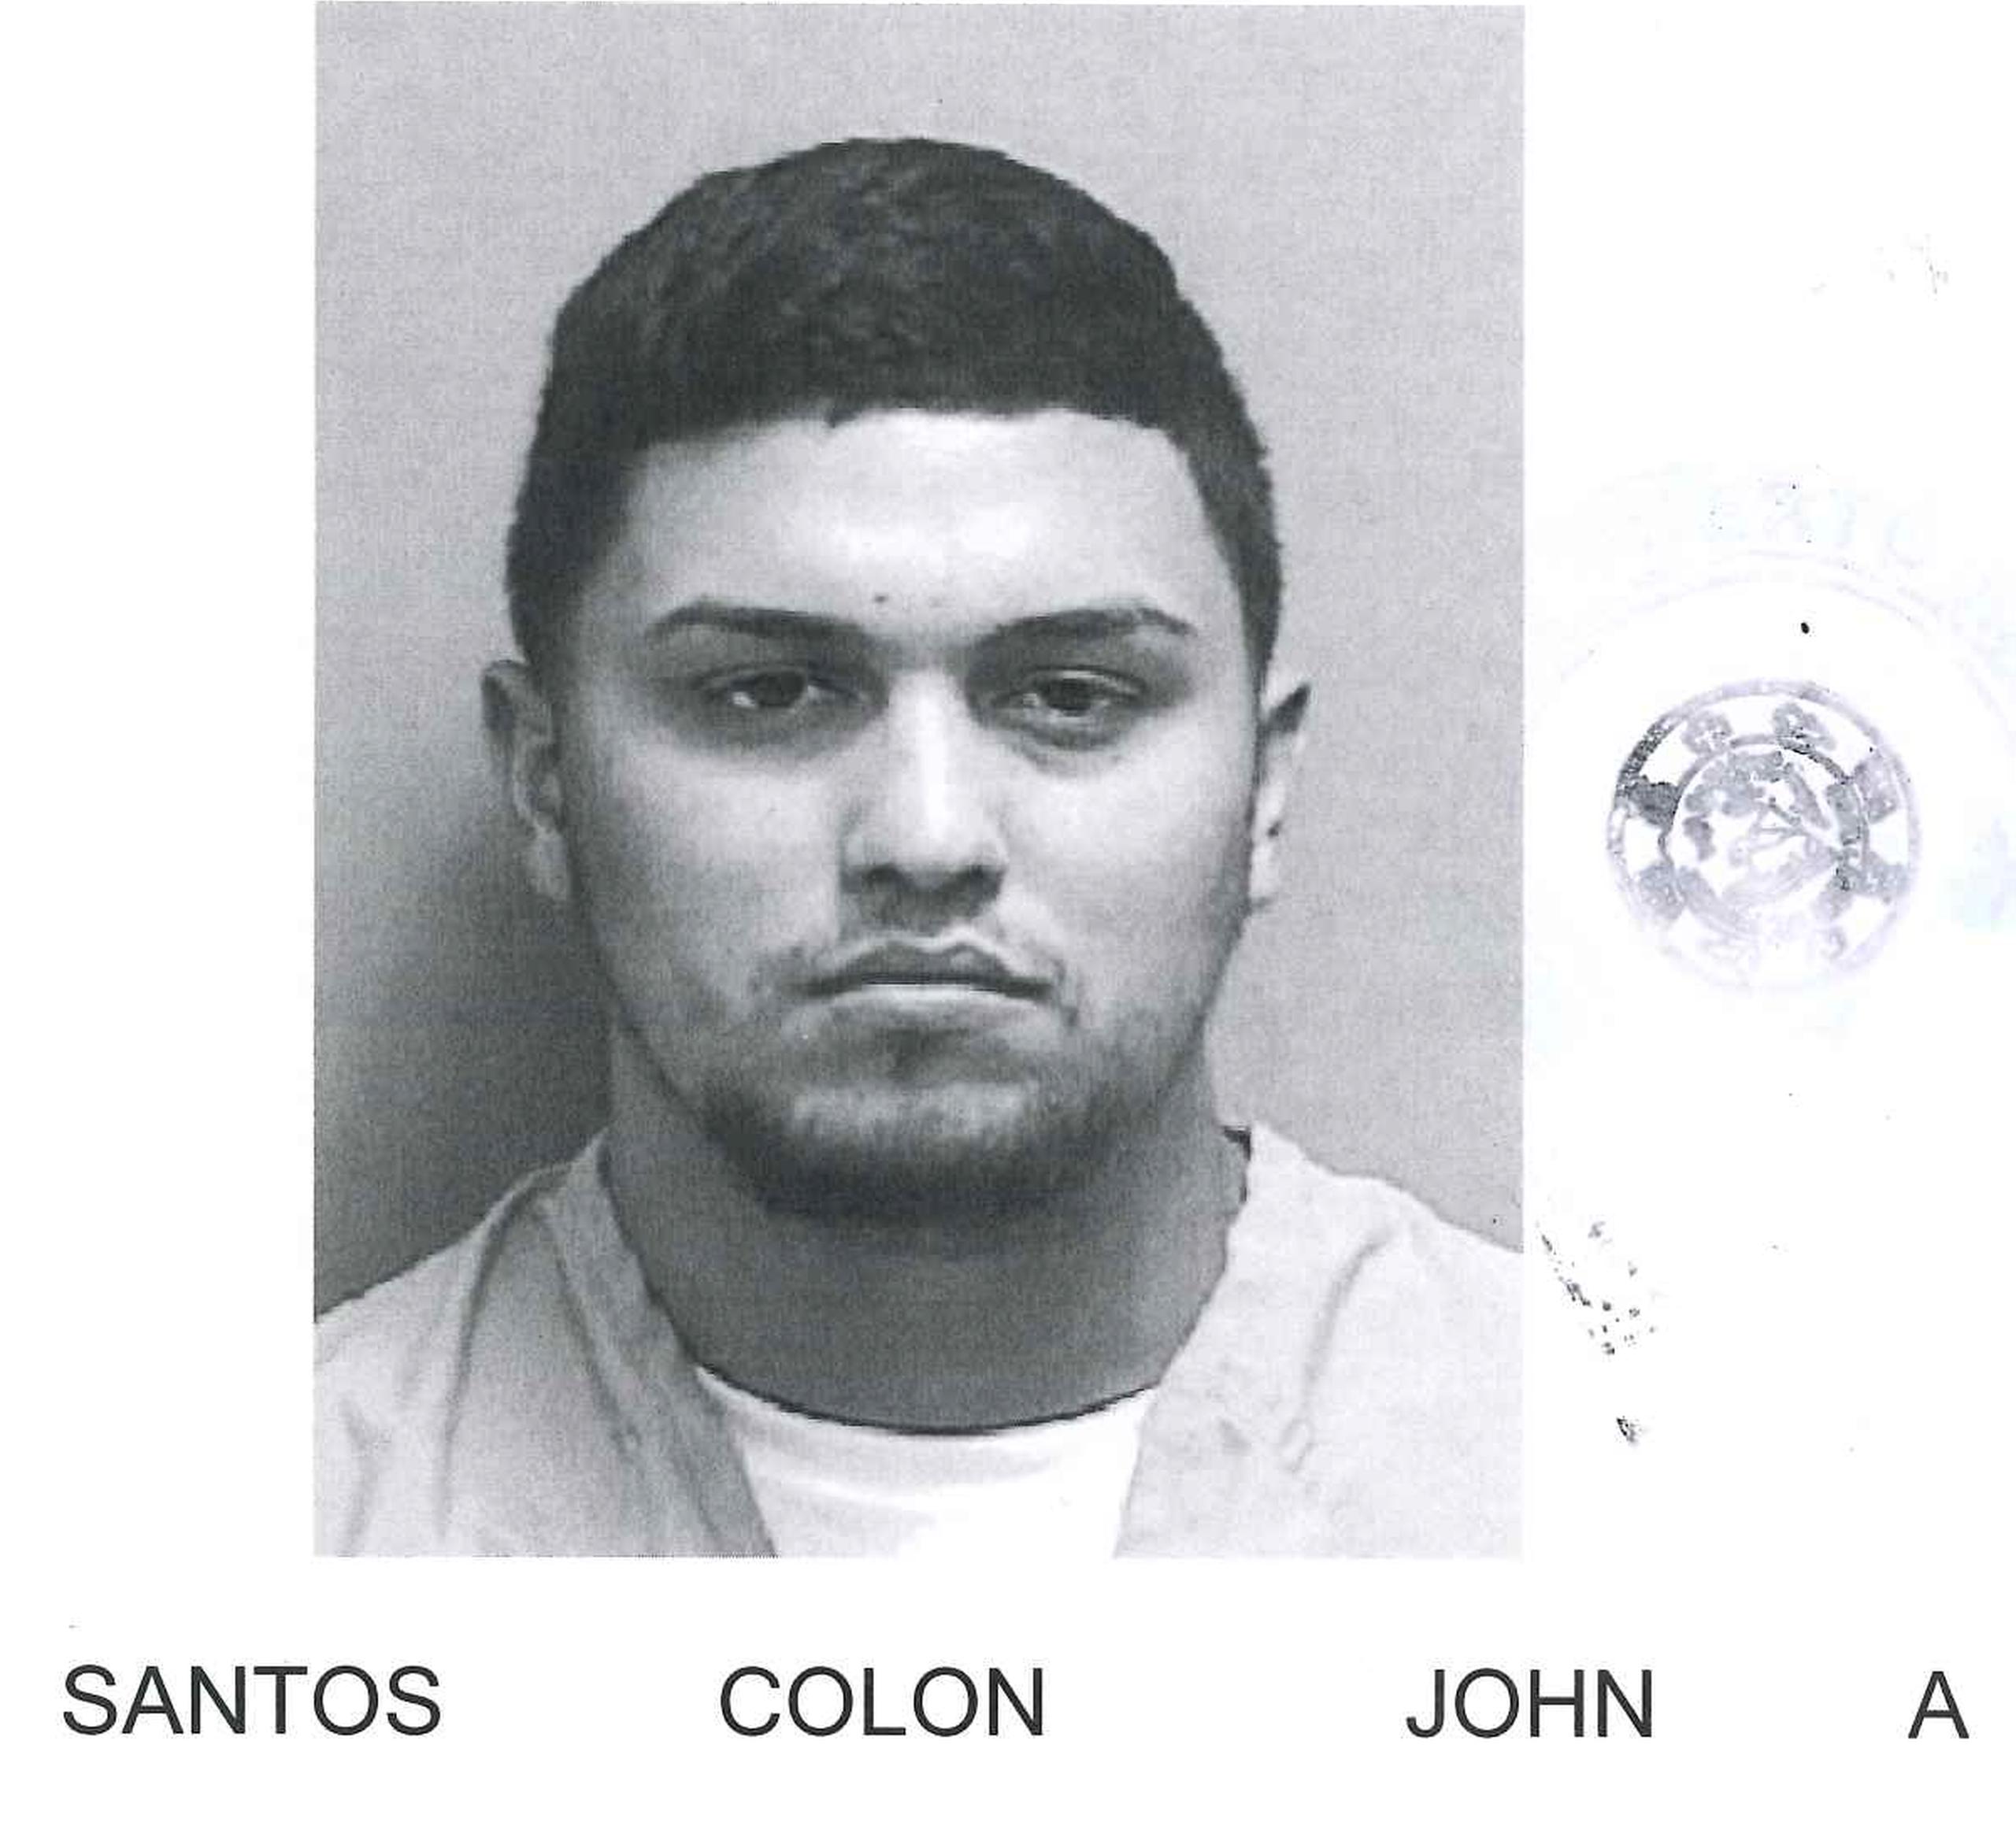 John A. Santos Colón fue acusado en ausencia por cargos de fraude y apropiación ilegal agravada. Si lo ha visto llame a la línea confidencial del Negociado de la Policía al (787) 343-2020.